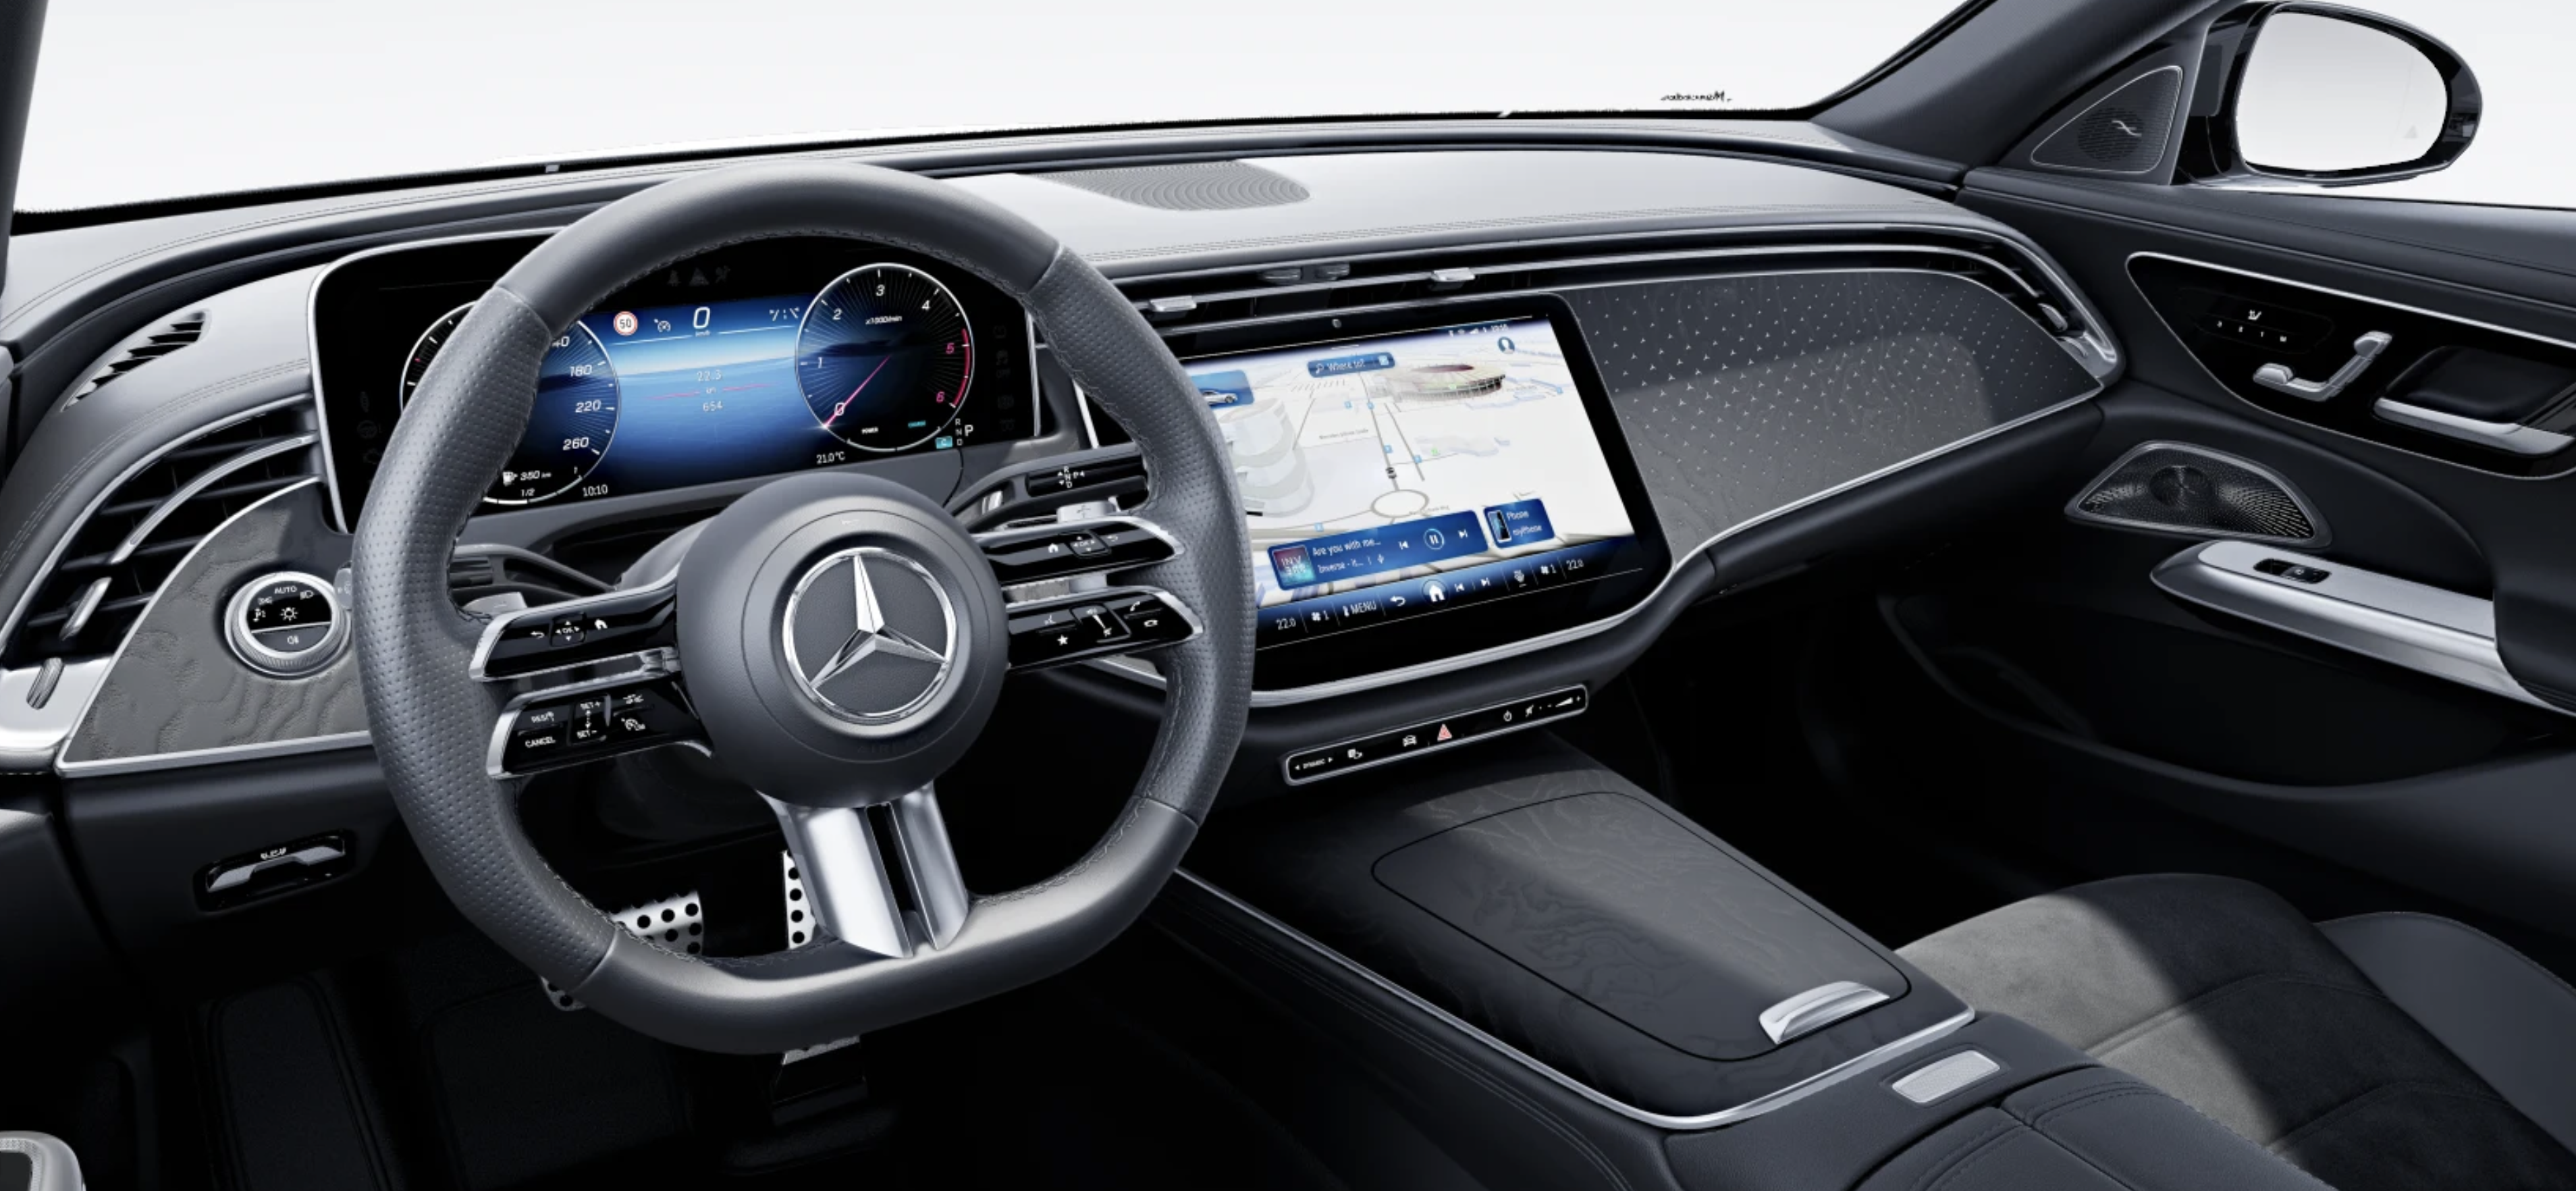 Mercedes E sedan 220d 4matic 9G-tronic AMG | nový model | byznys naftový sedan | nové auto ve výrobě | luxusní digitální interiér | nejmodernější technologie | nové auto ve výrobě | nákup online | AUTO